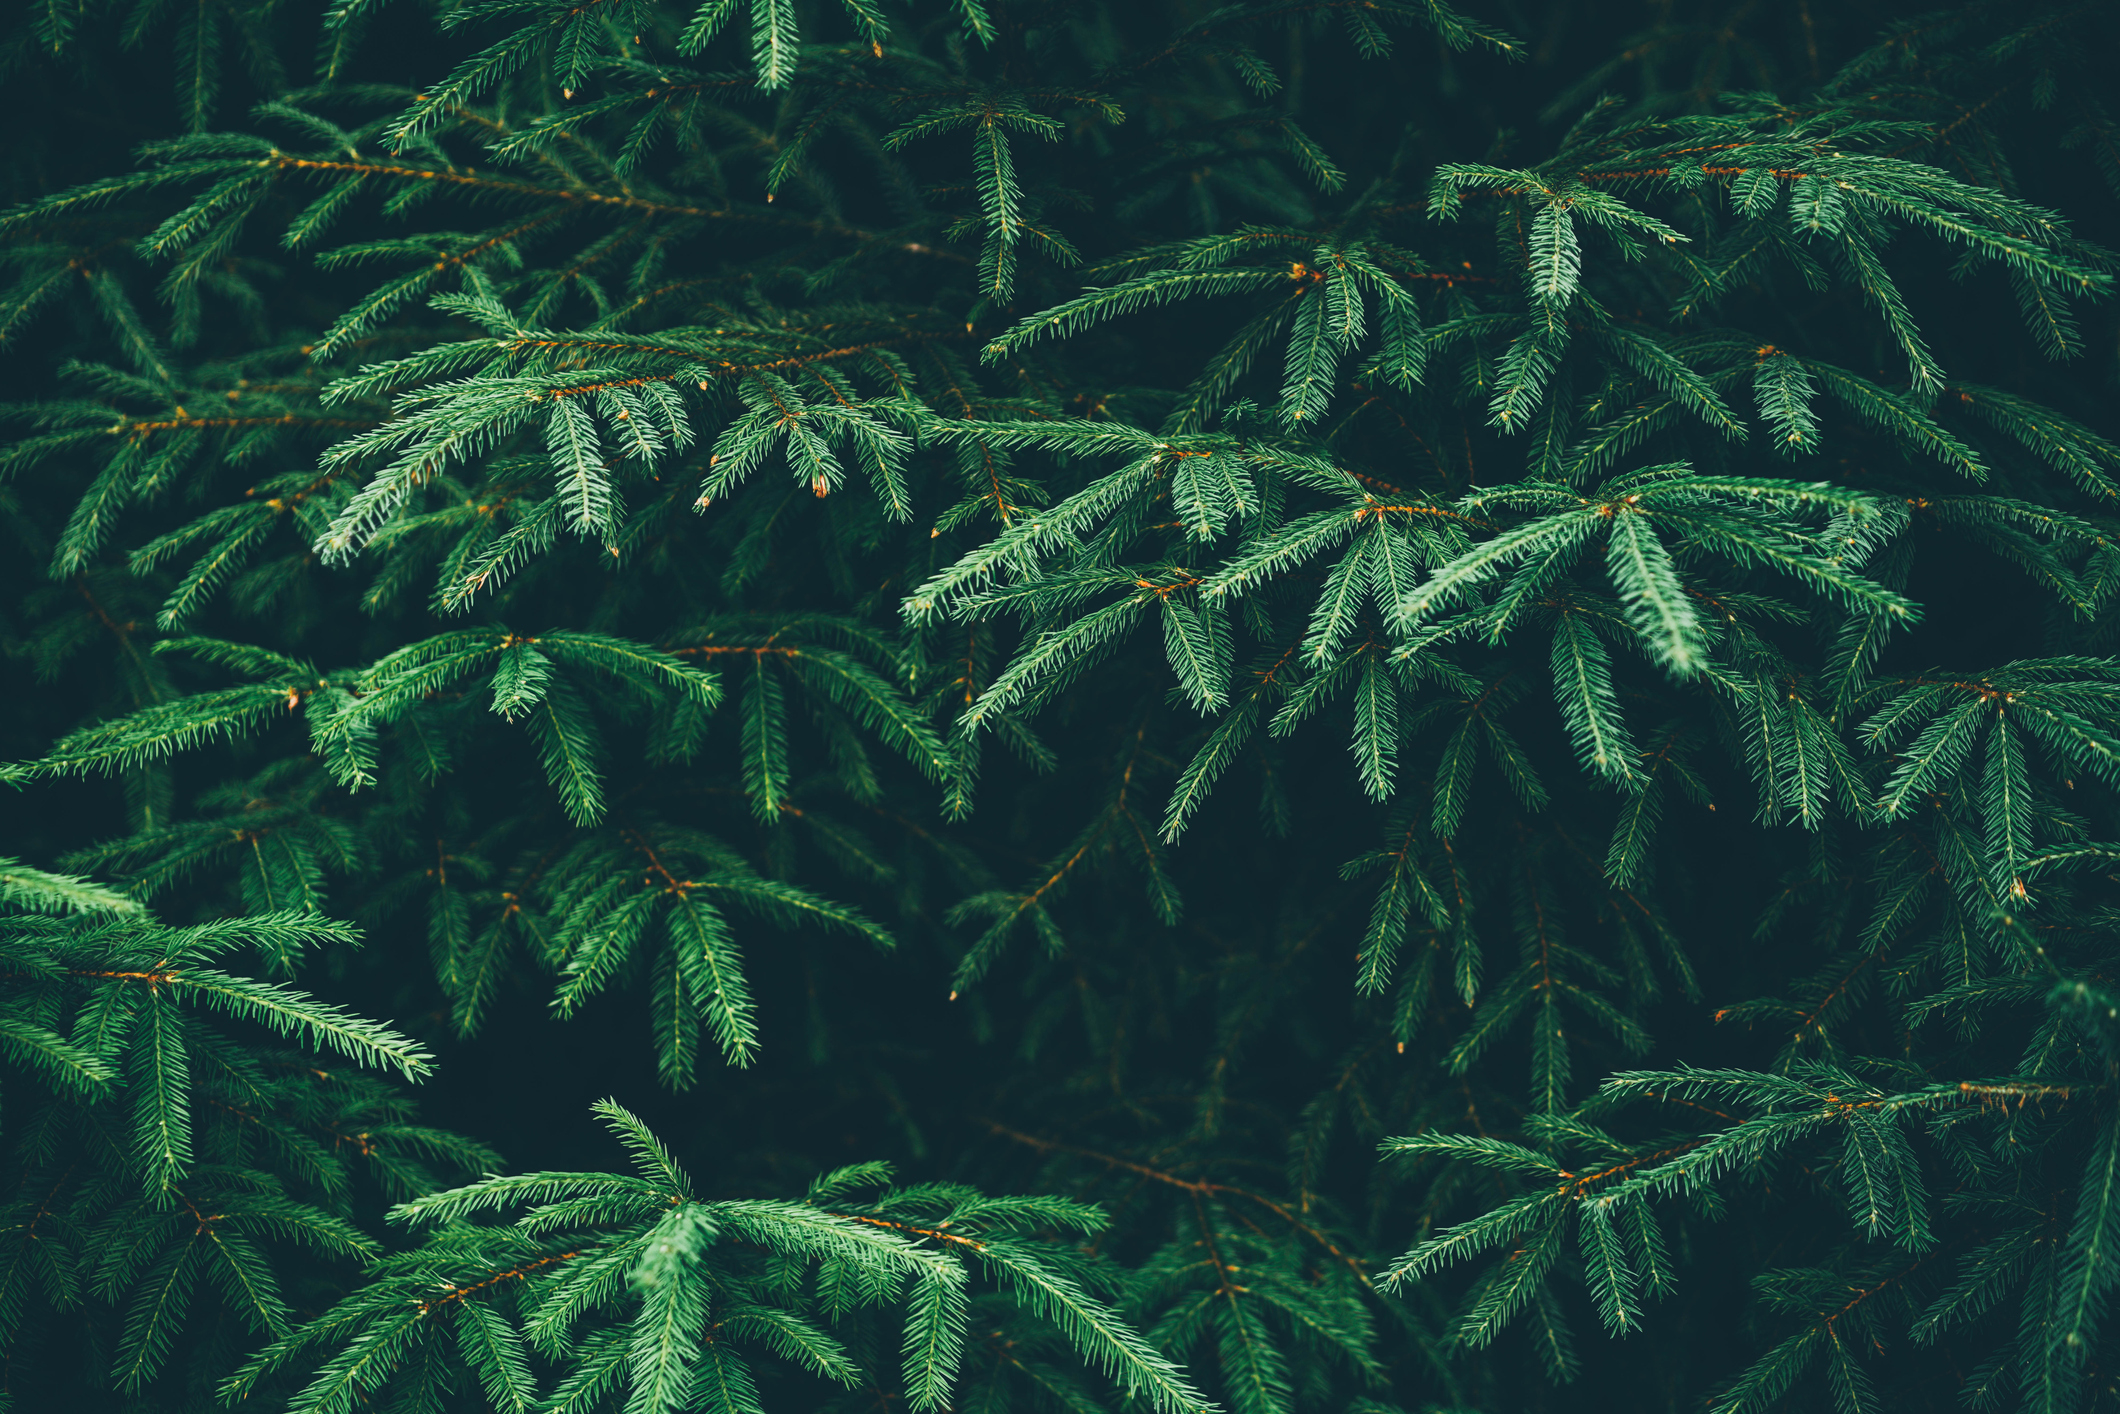 Closeup of a pine tree